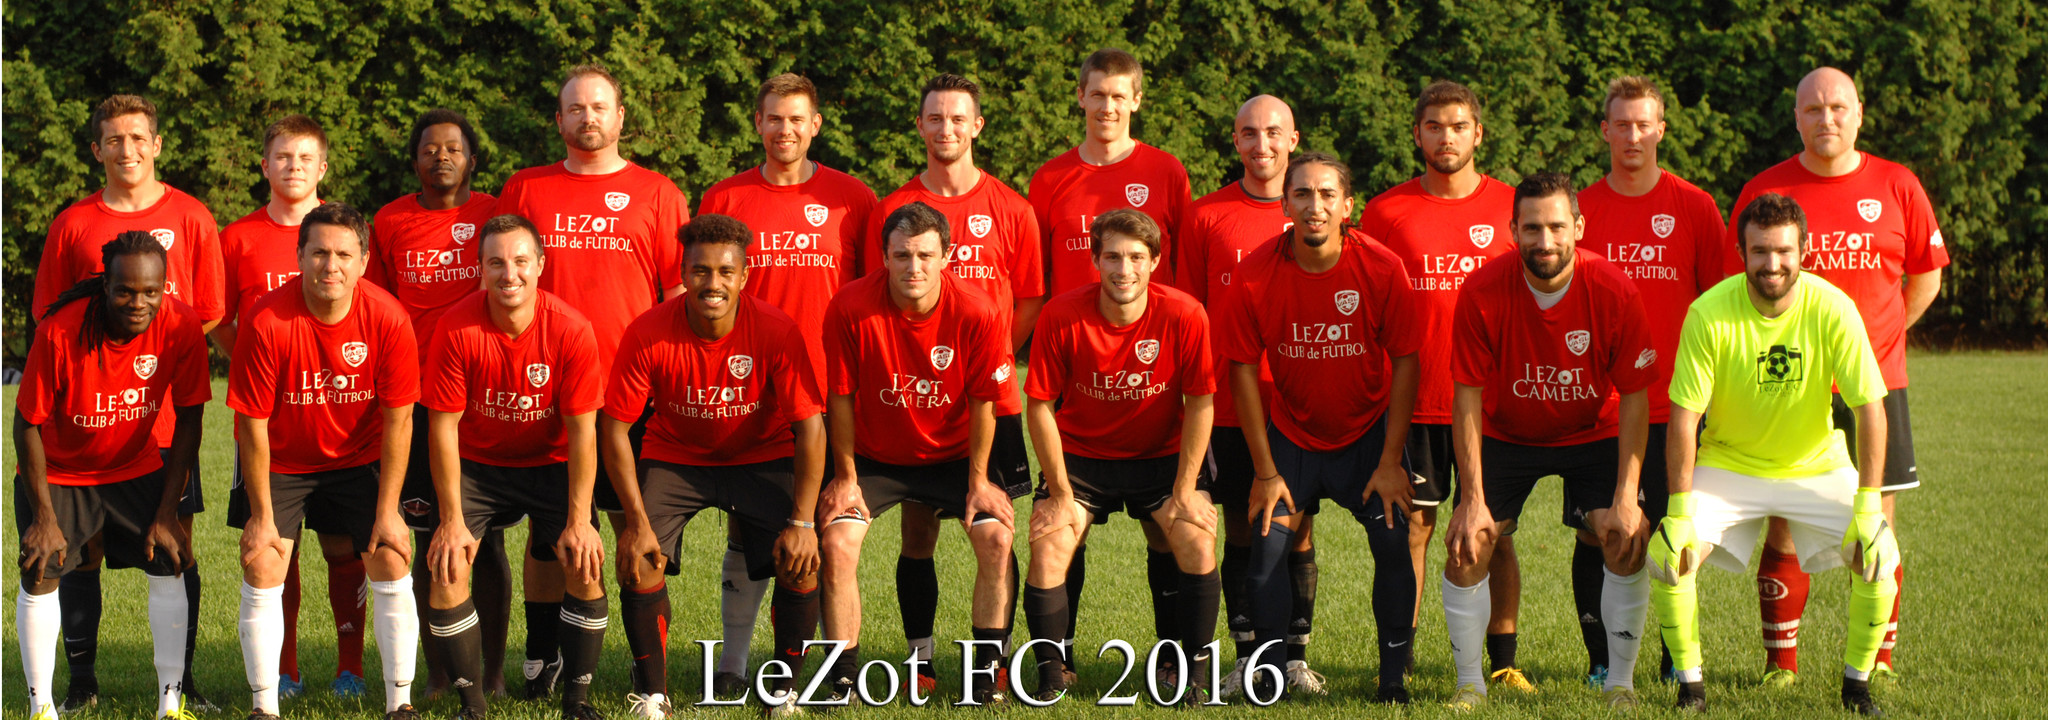 LeZot FC Team picture